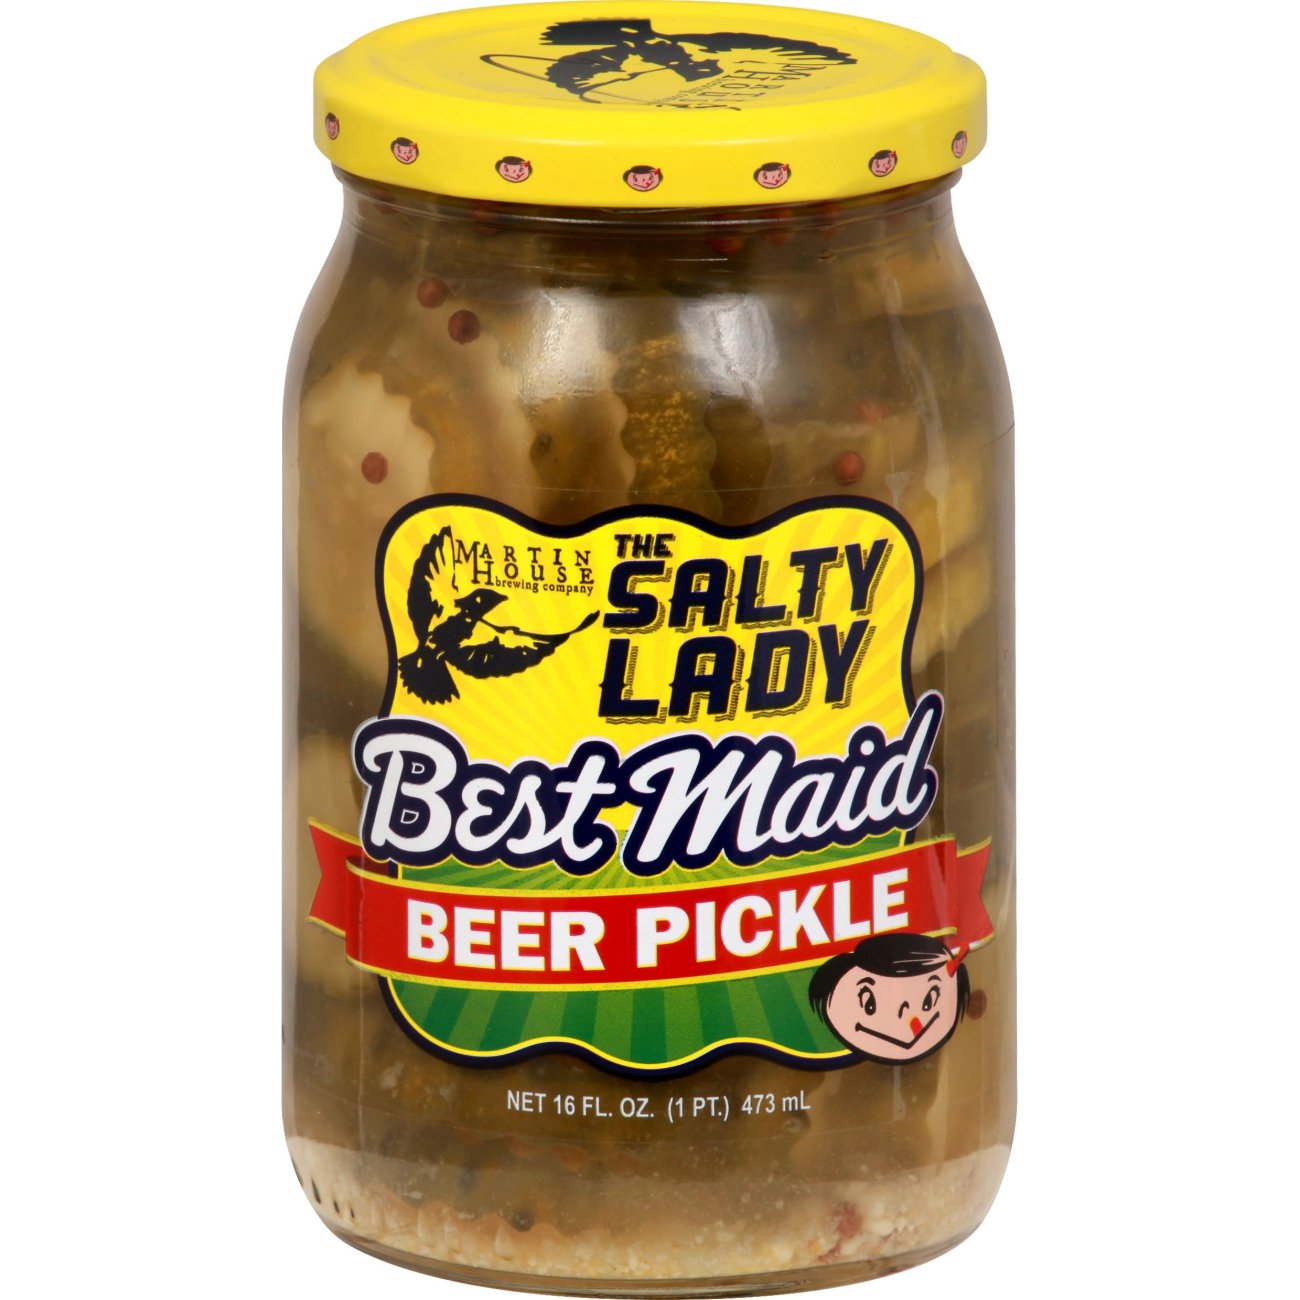 Bestmade pickle beer